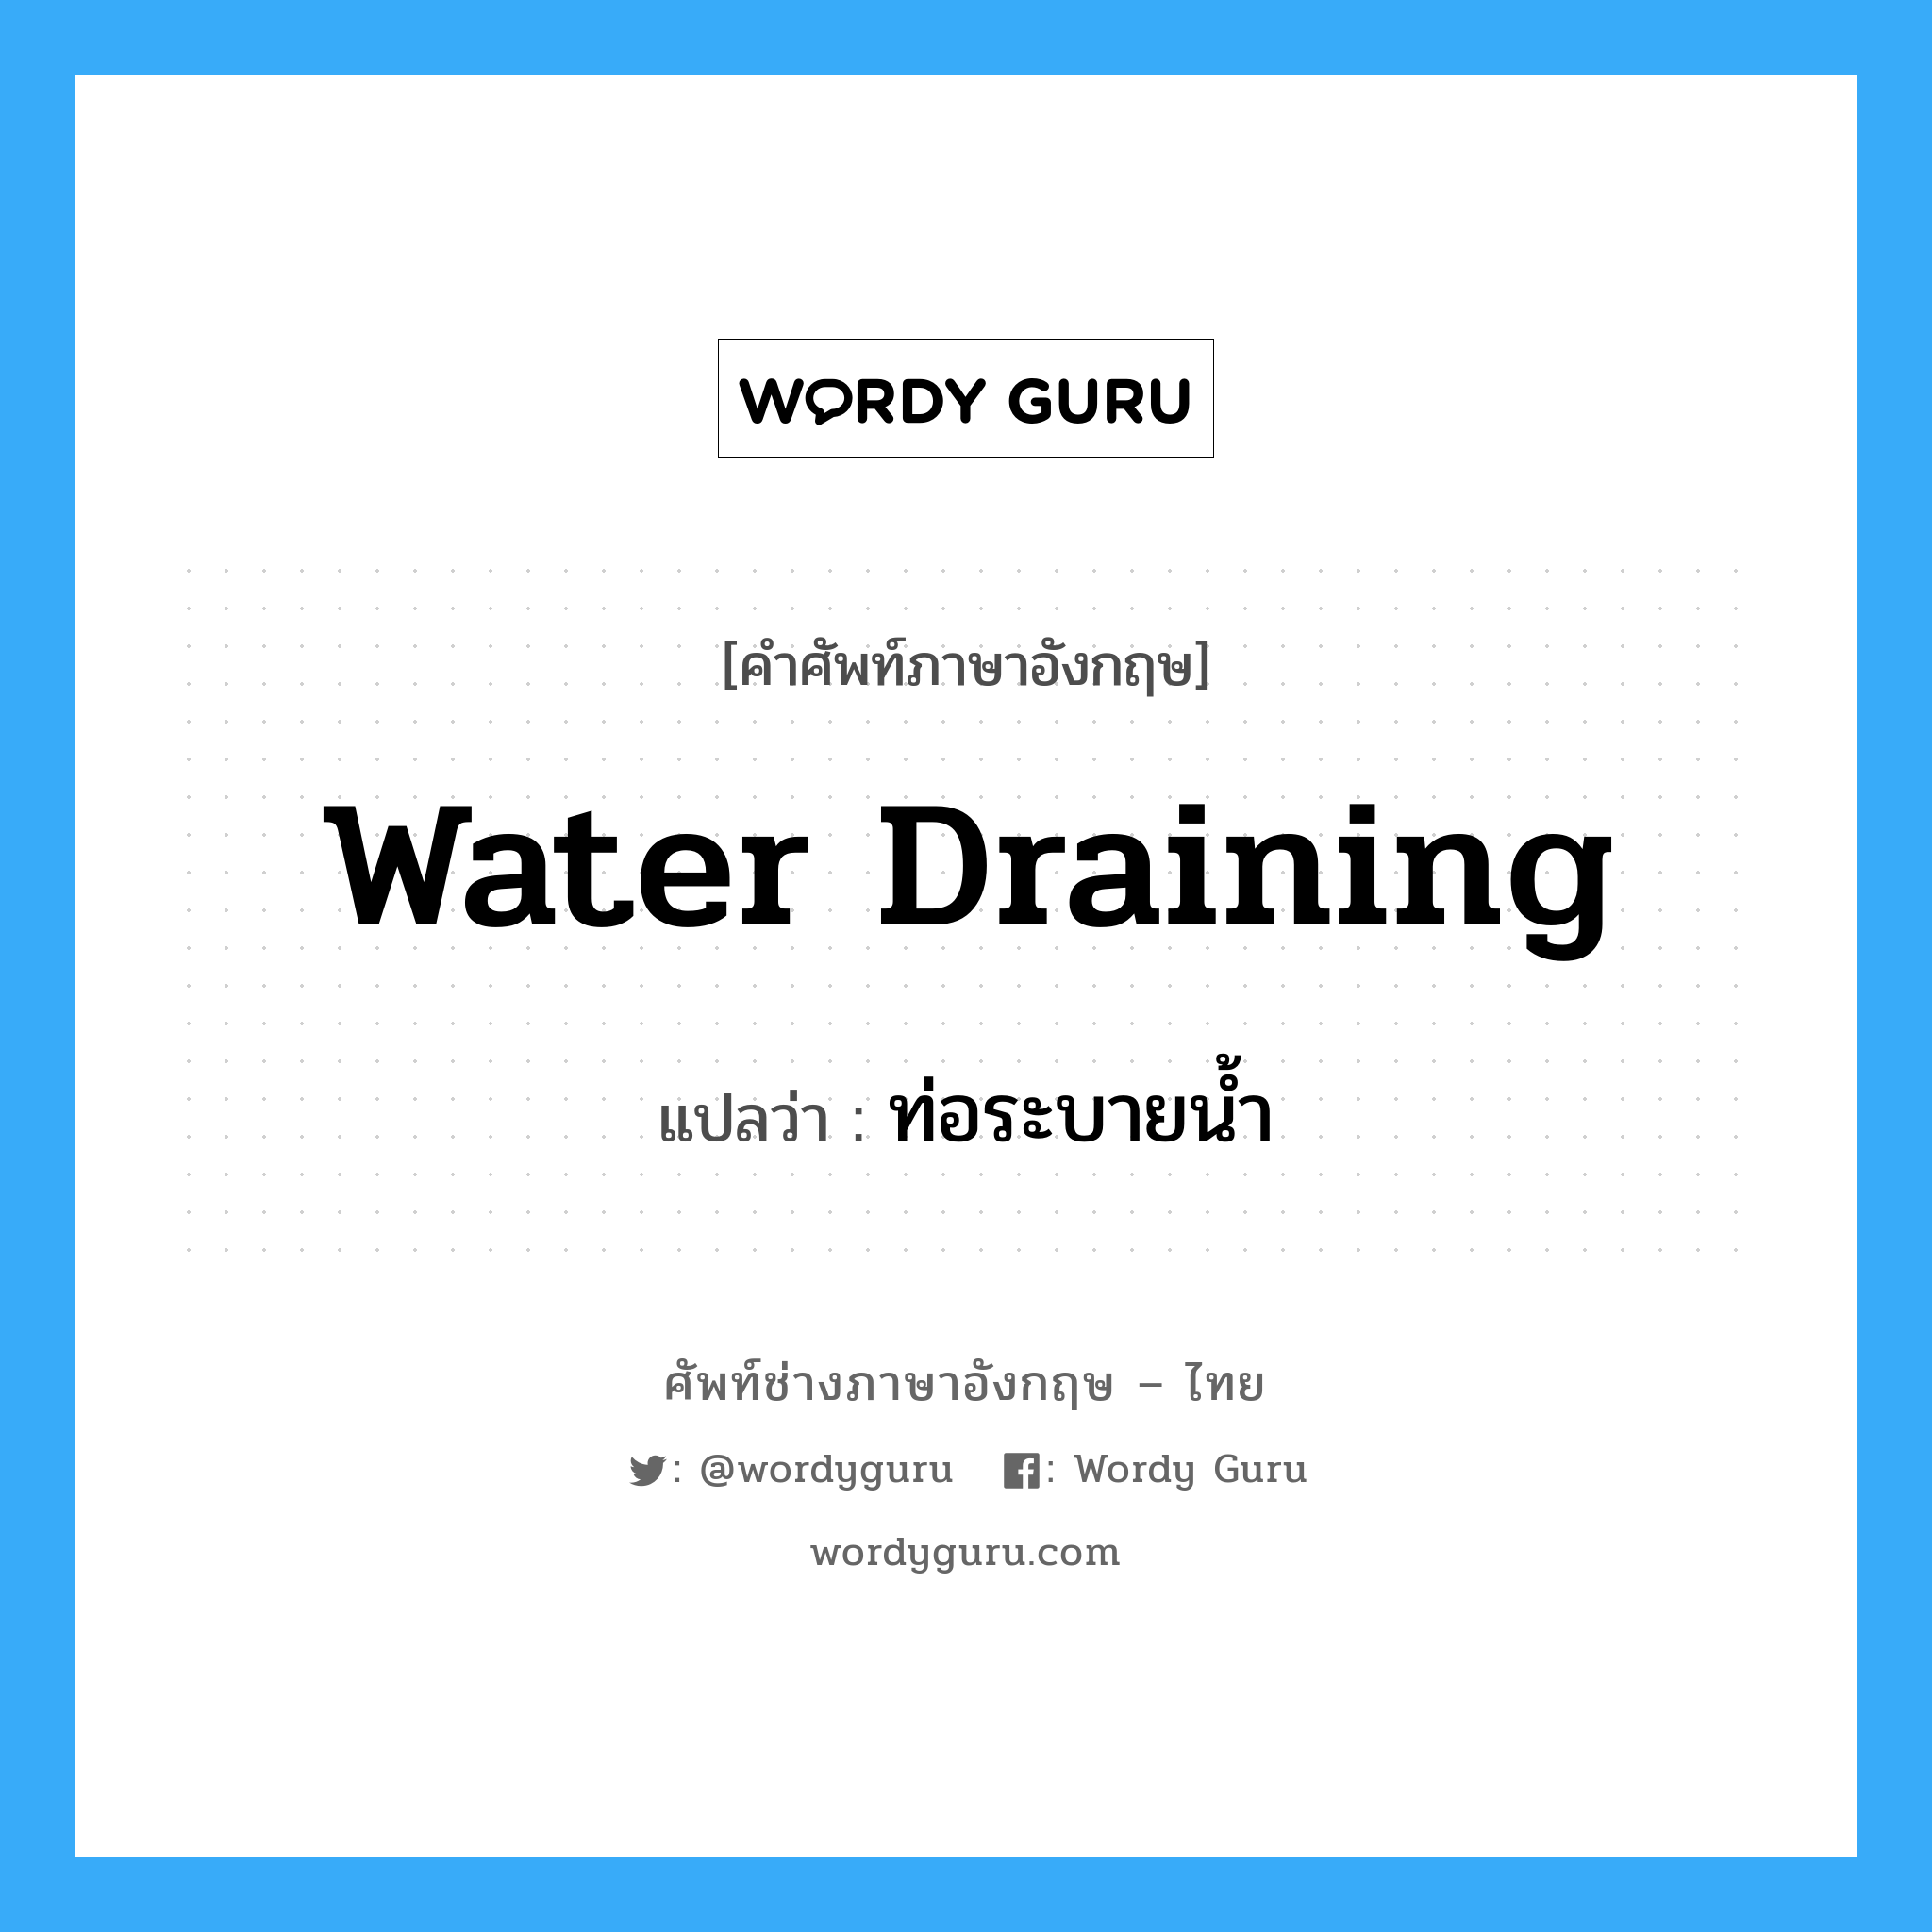 water draining แปลว่า?, คำศัพท์ช่างภาษาอังกฤษ - ไทย water draining คำศัพท์ภาษาอังกฤษ water draining แปลว่า ท่อระบายน้ำ